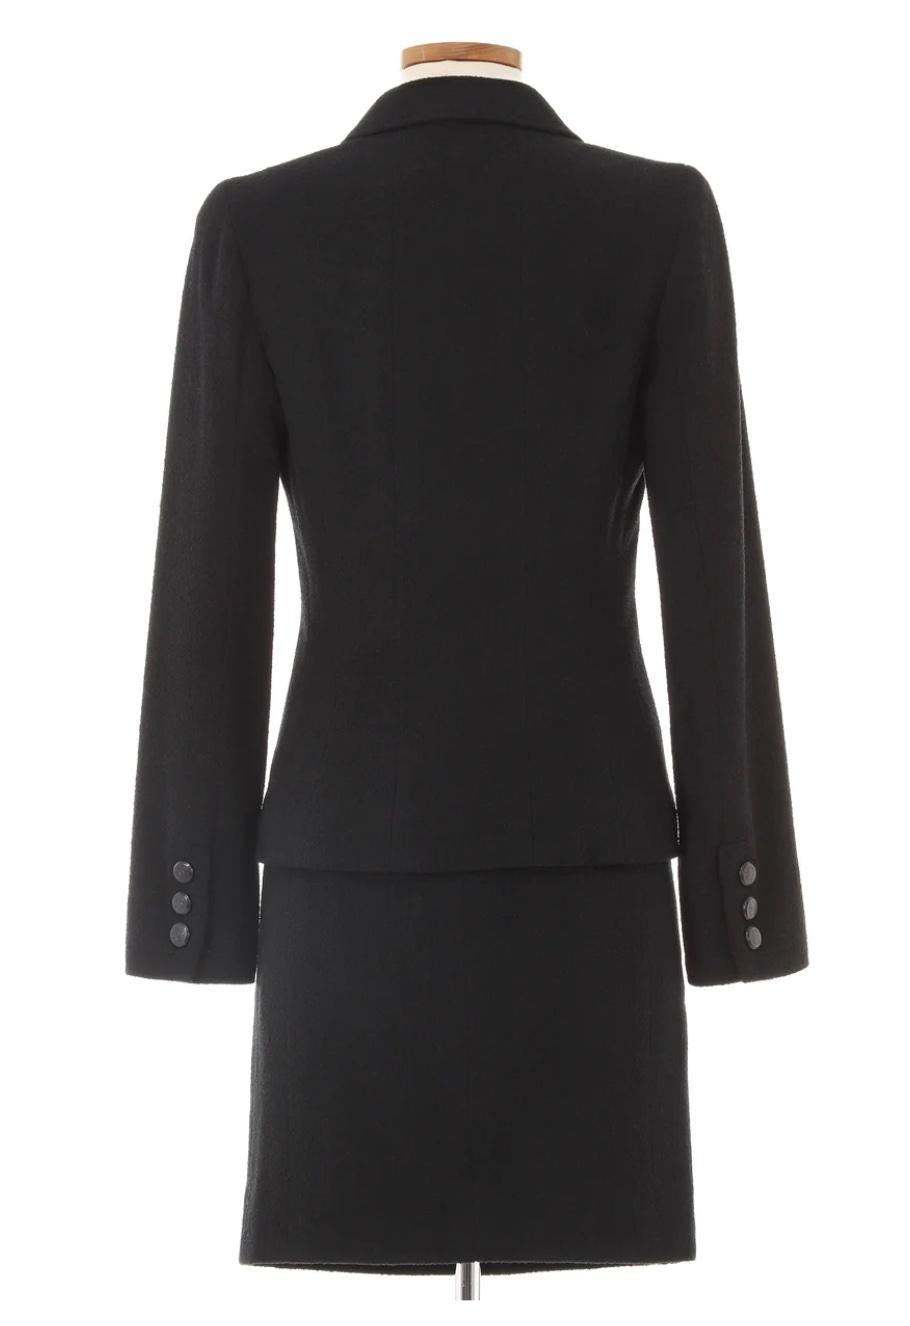 Automne 1998 Chanel Combinaison jupe noire. Pièce classique et intemporelle de Chanel en laine noire avec boutons Chanel noirs. Peut être porté séparément pour des pièces individuelles polyvalentes.

Taille marquée (FR)36.